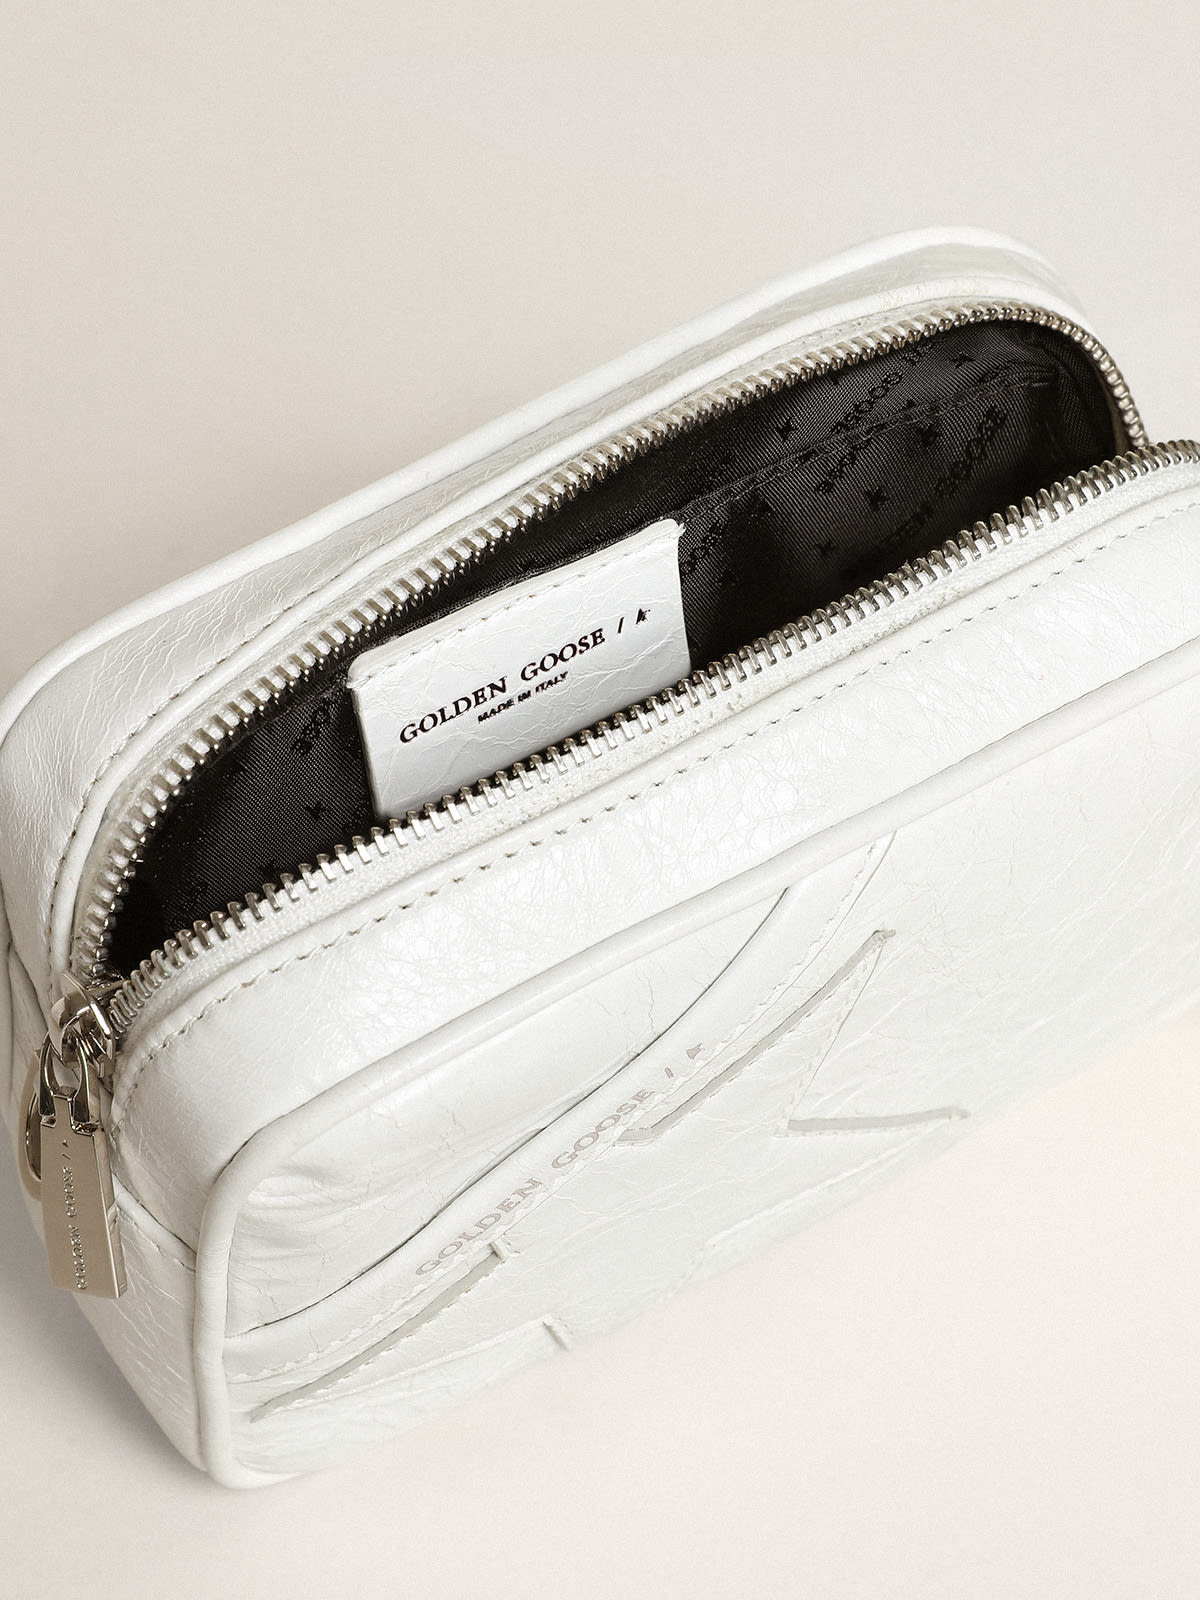 Golden Goose - Borsa Mini Star Bag in pelle lucida color bianco con stella ton sur ton in 